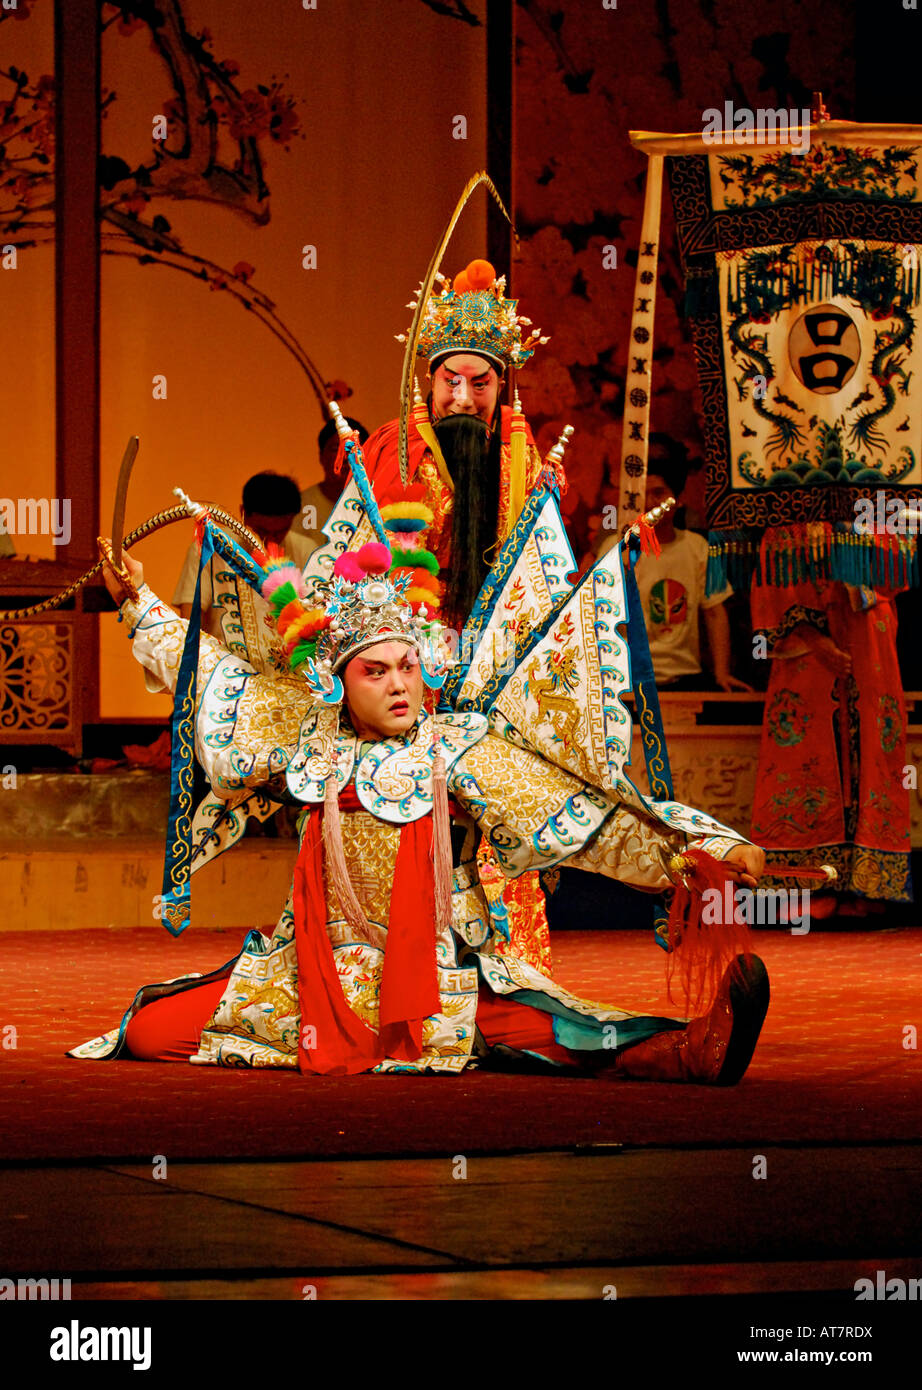 Traditional Sichuan Opera story, Chengdu China Stock Photo